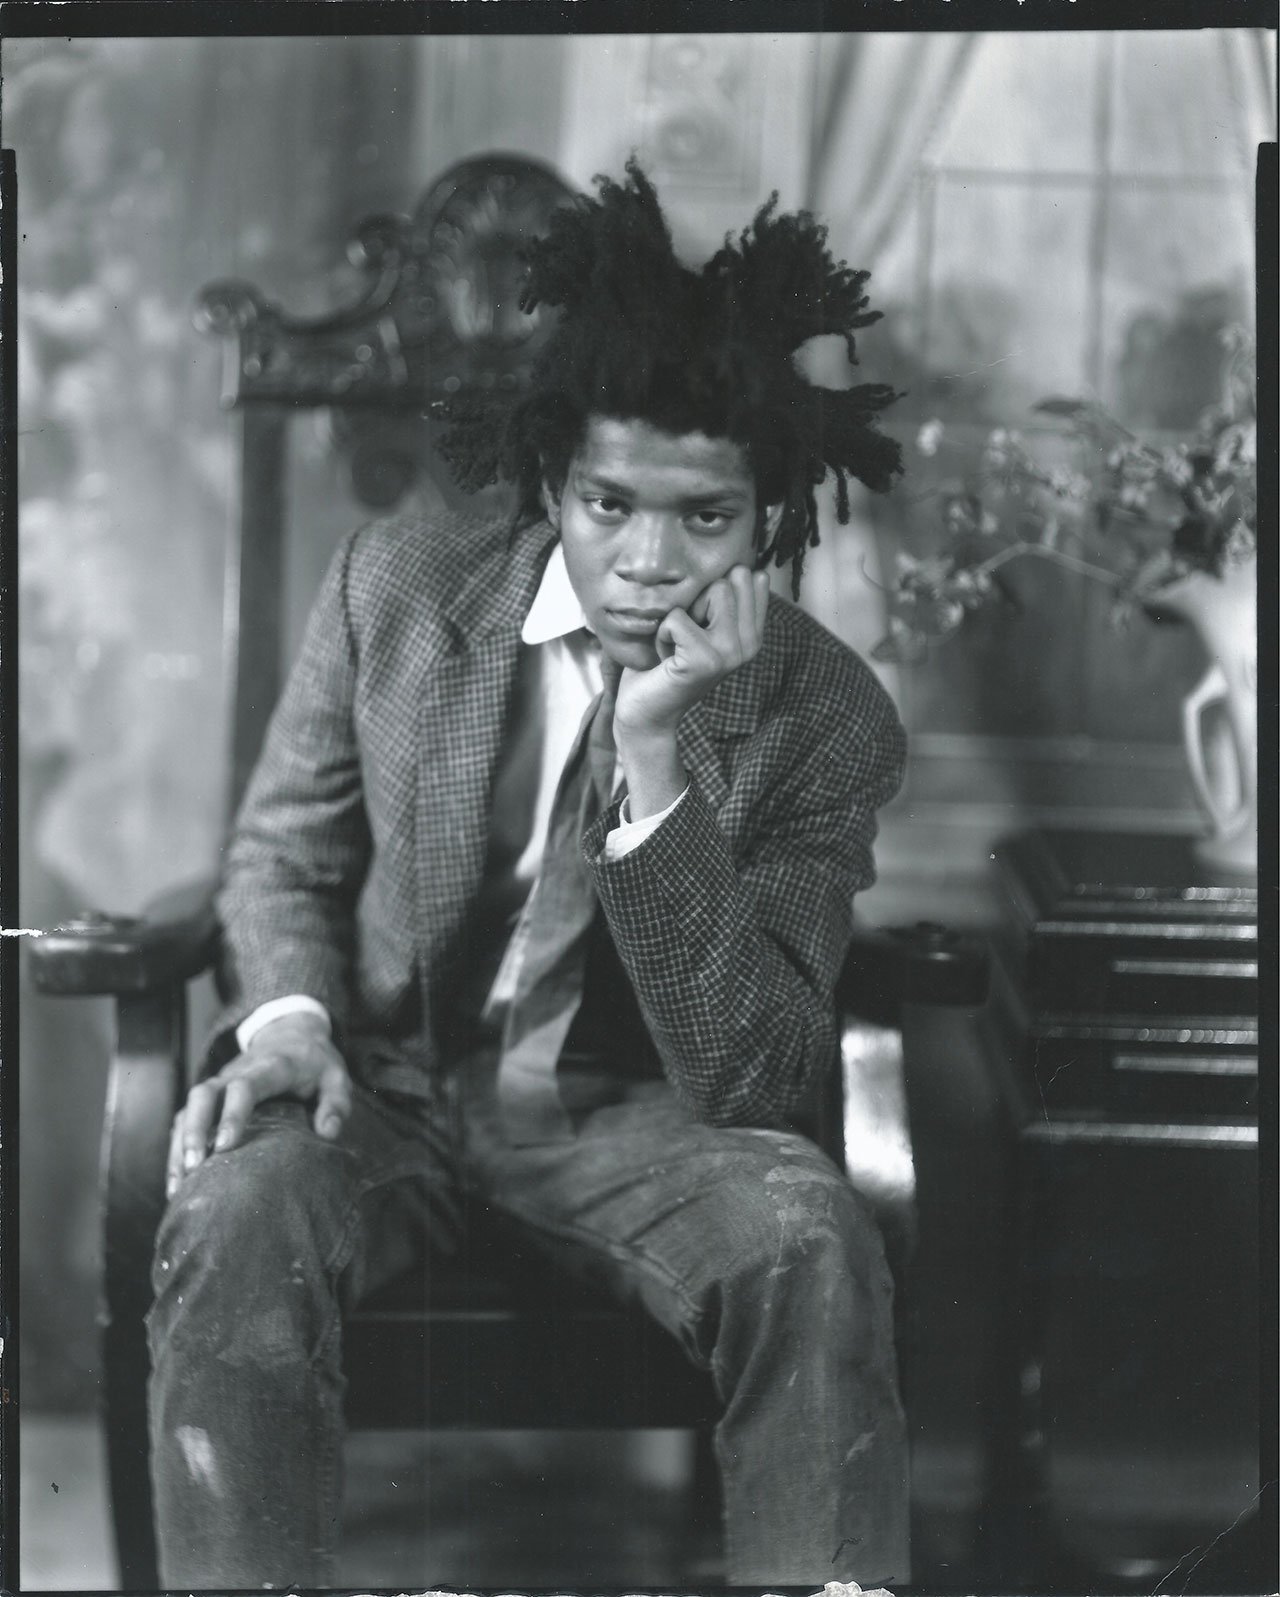 Jean-Michel Basquiat 1982  © James Van der Zee Archive, The Metropolitan Museum of Art